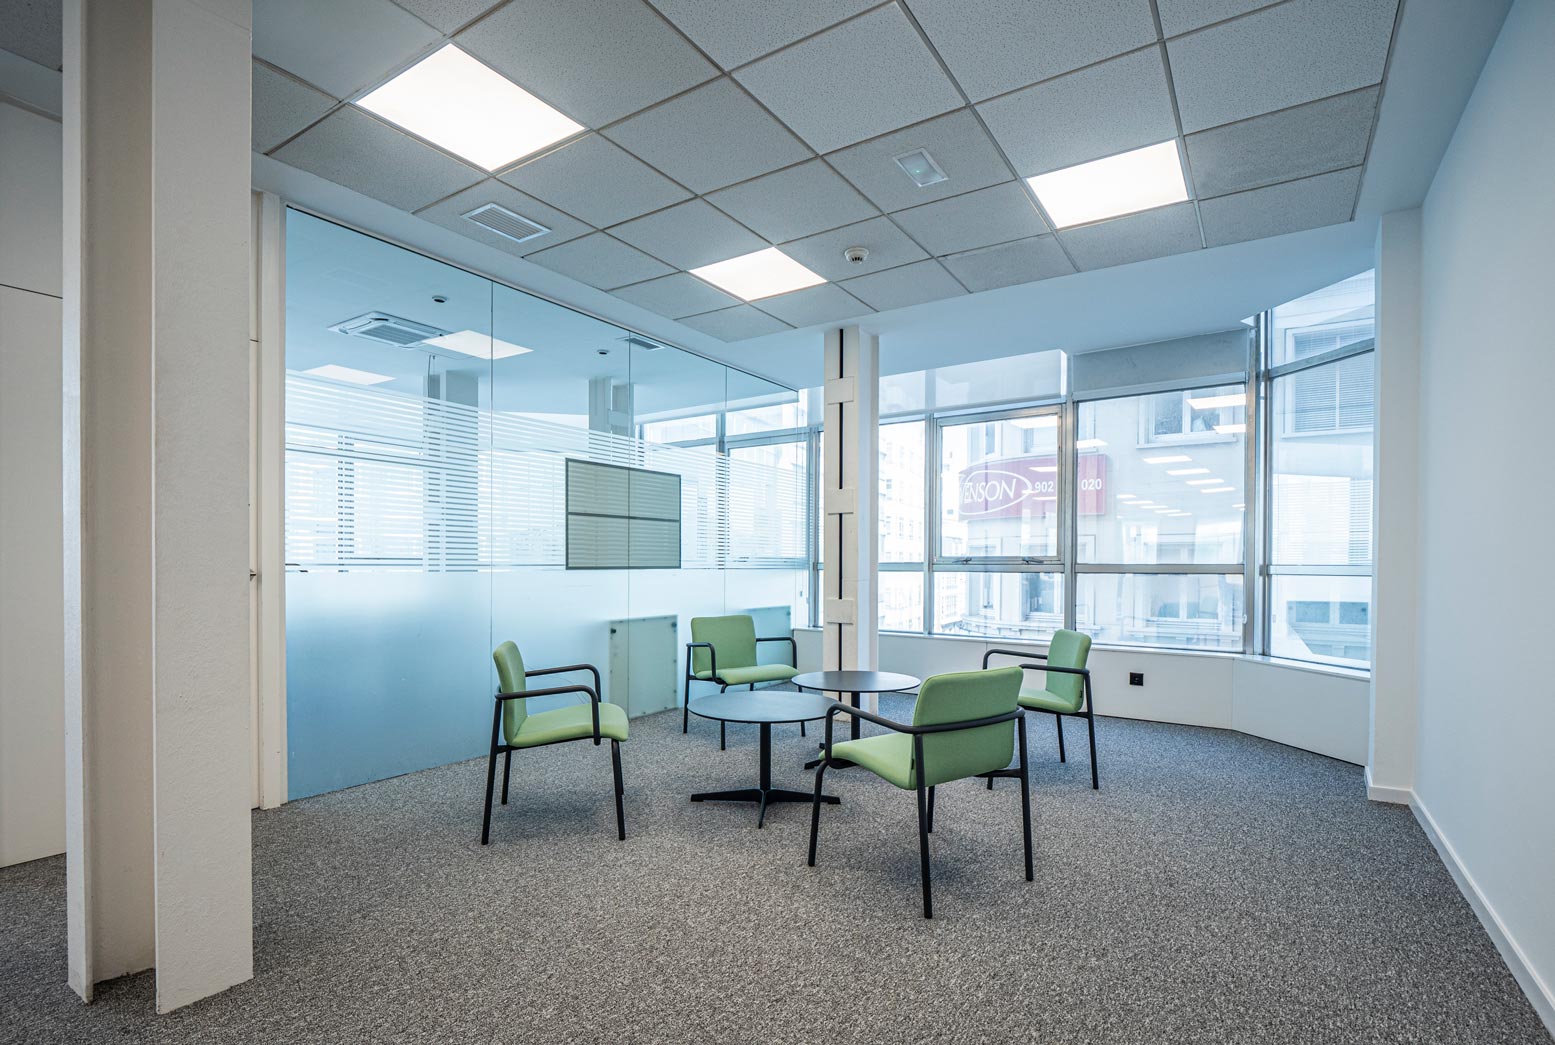 Mampara de vidrio en zona de espera de oficina y espacio de trabajo con mobiliario estándar y a medida